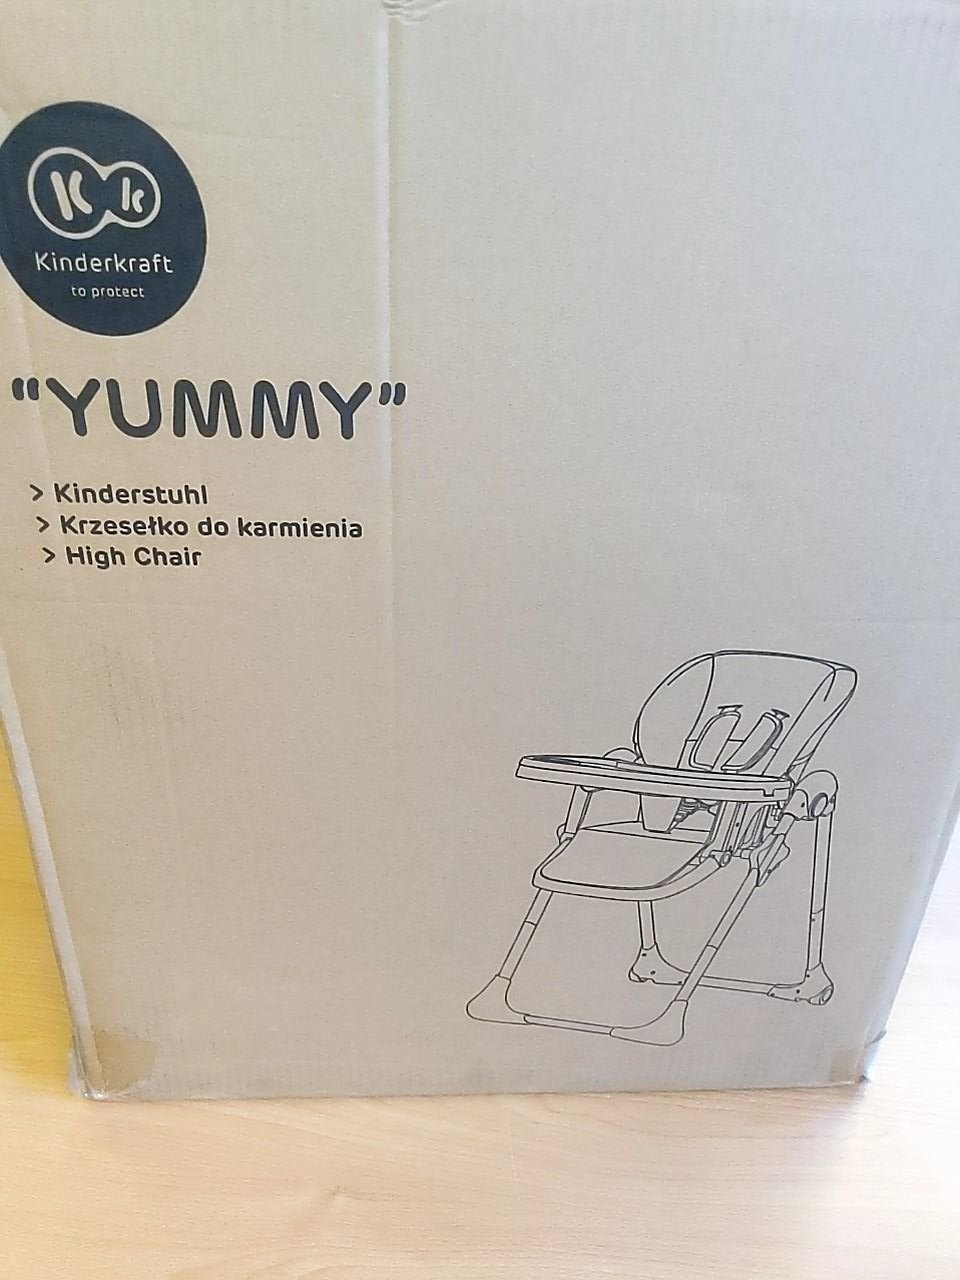 Dětská jídelní stolička Kinderkraft Yummy (růžová)